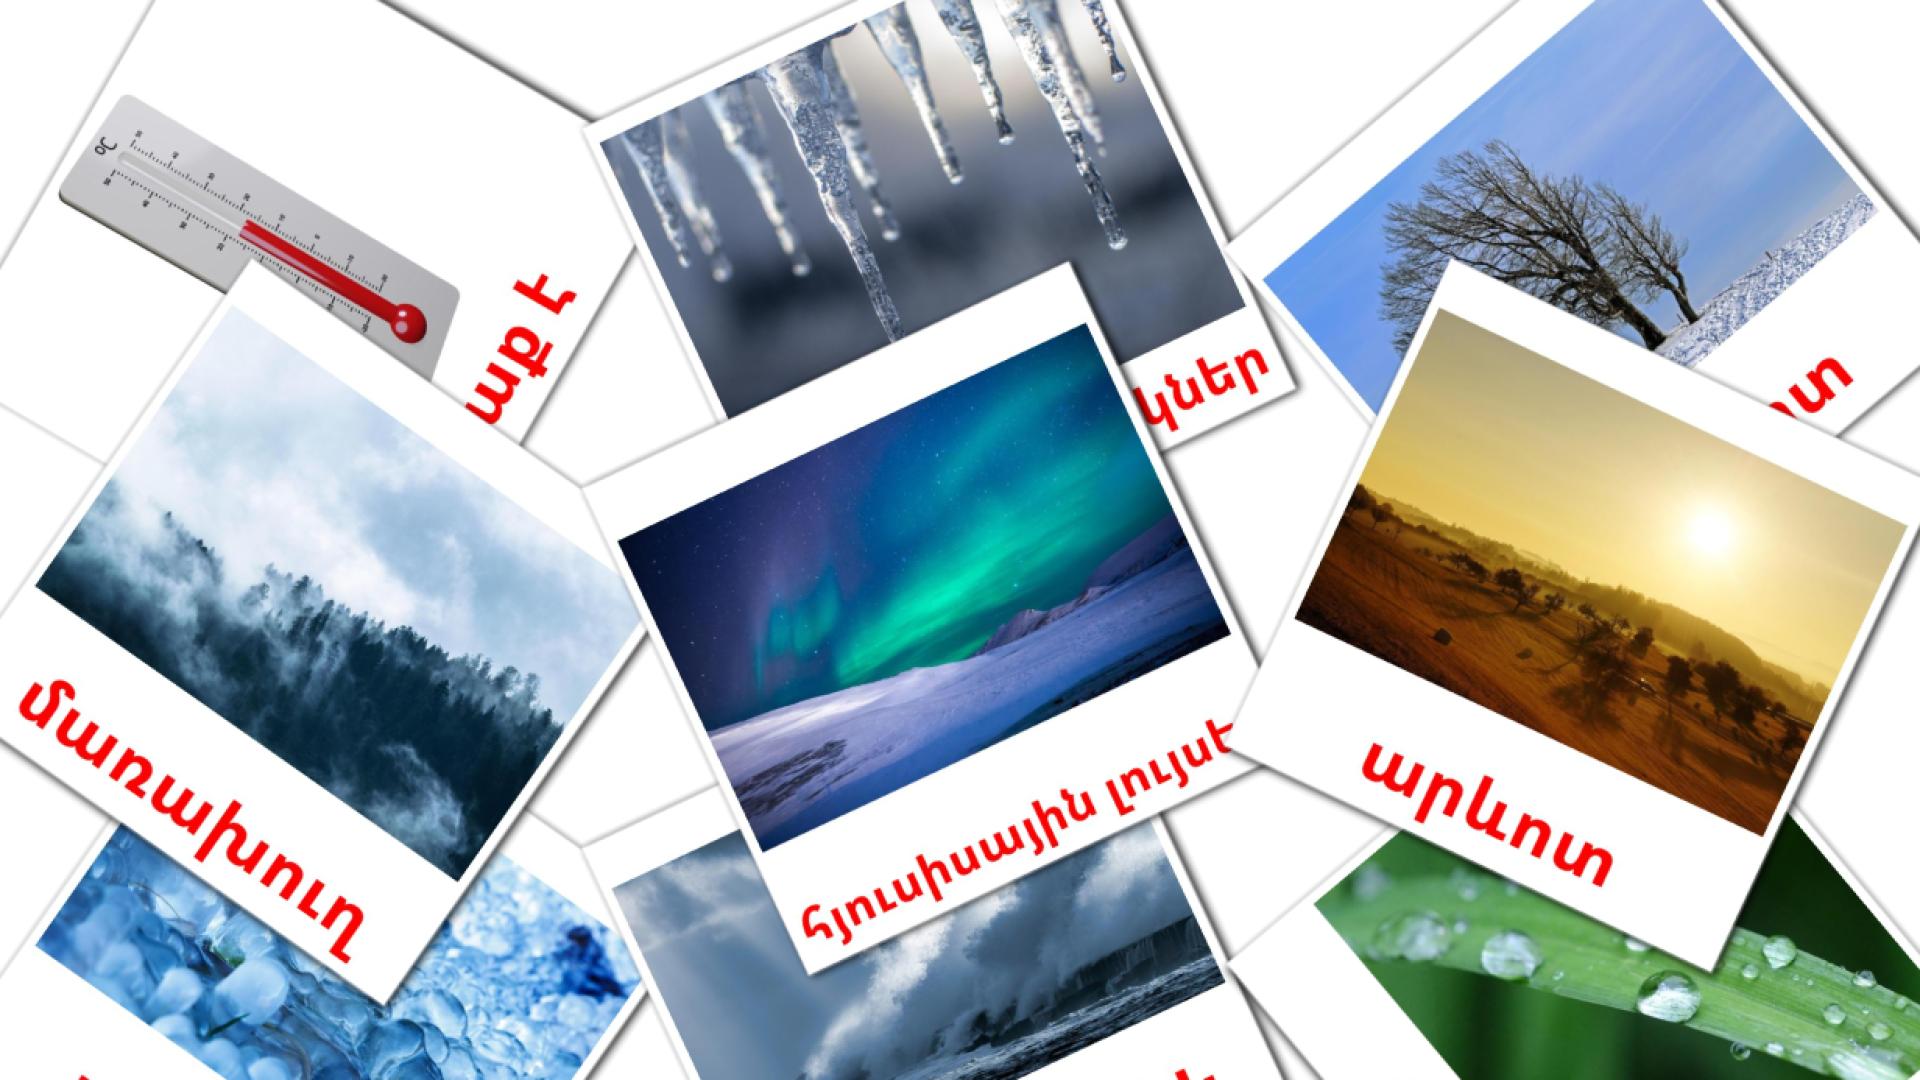 Clima - Cartões de vocabulário armênio